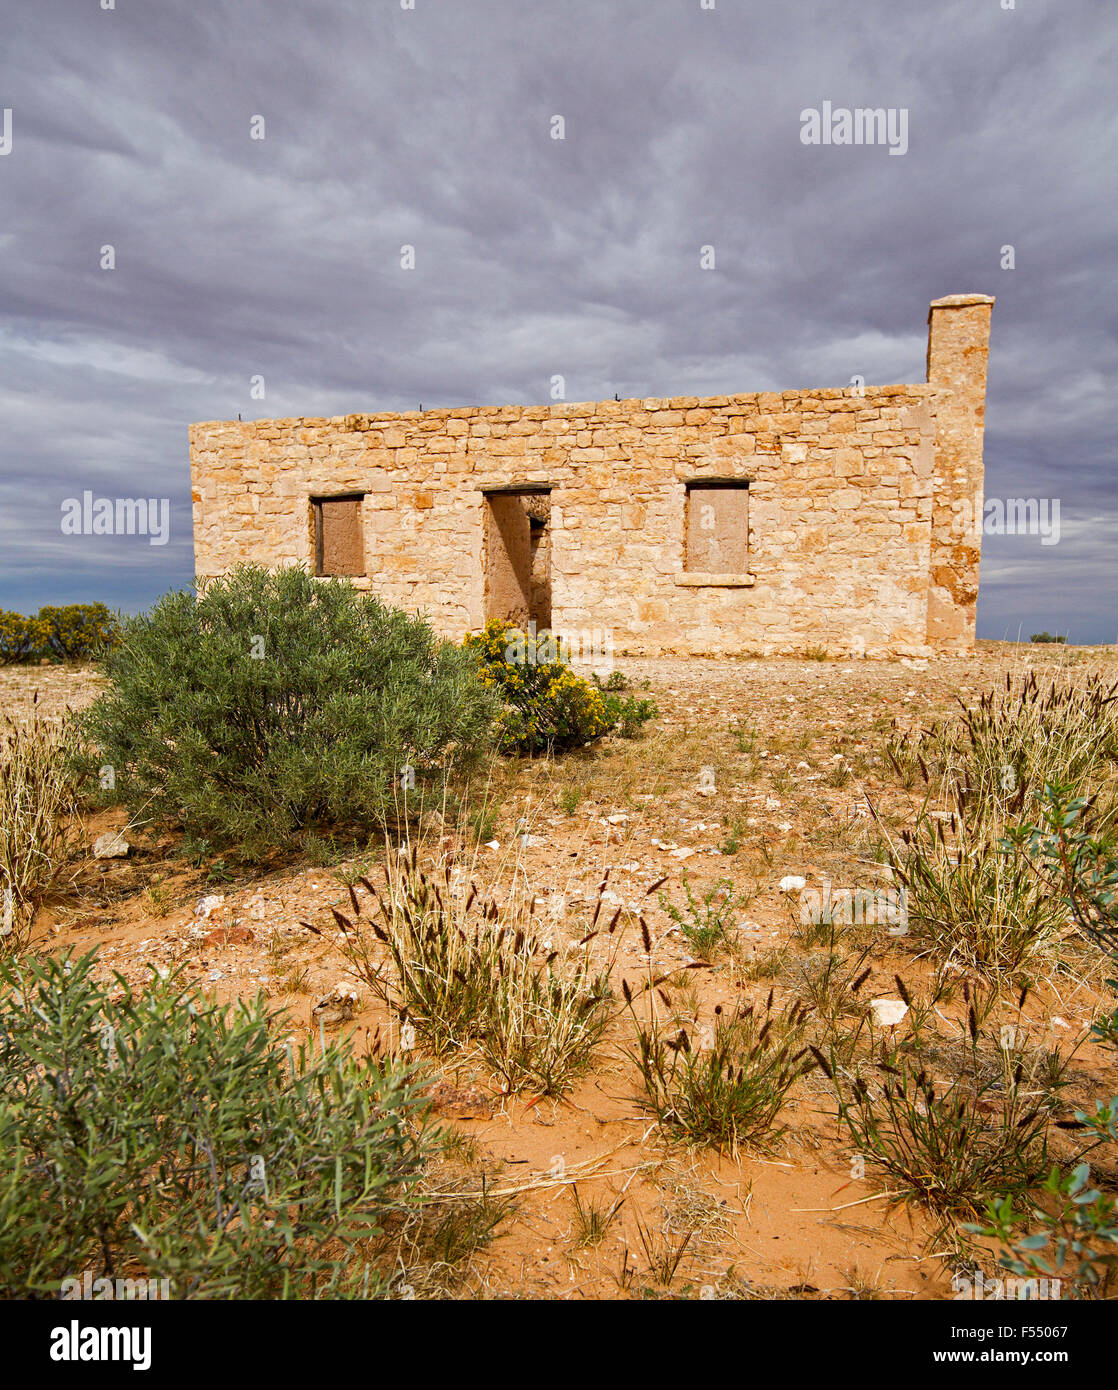 Ruines du 19ème siècle historique Carcory homestead cottage en pierre, entourée de plantes indigènes sous ciel d'orage, outback Australie Banque D'Images